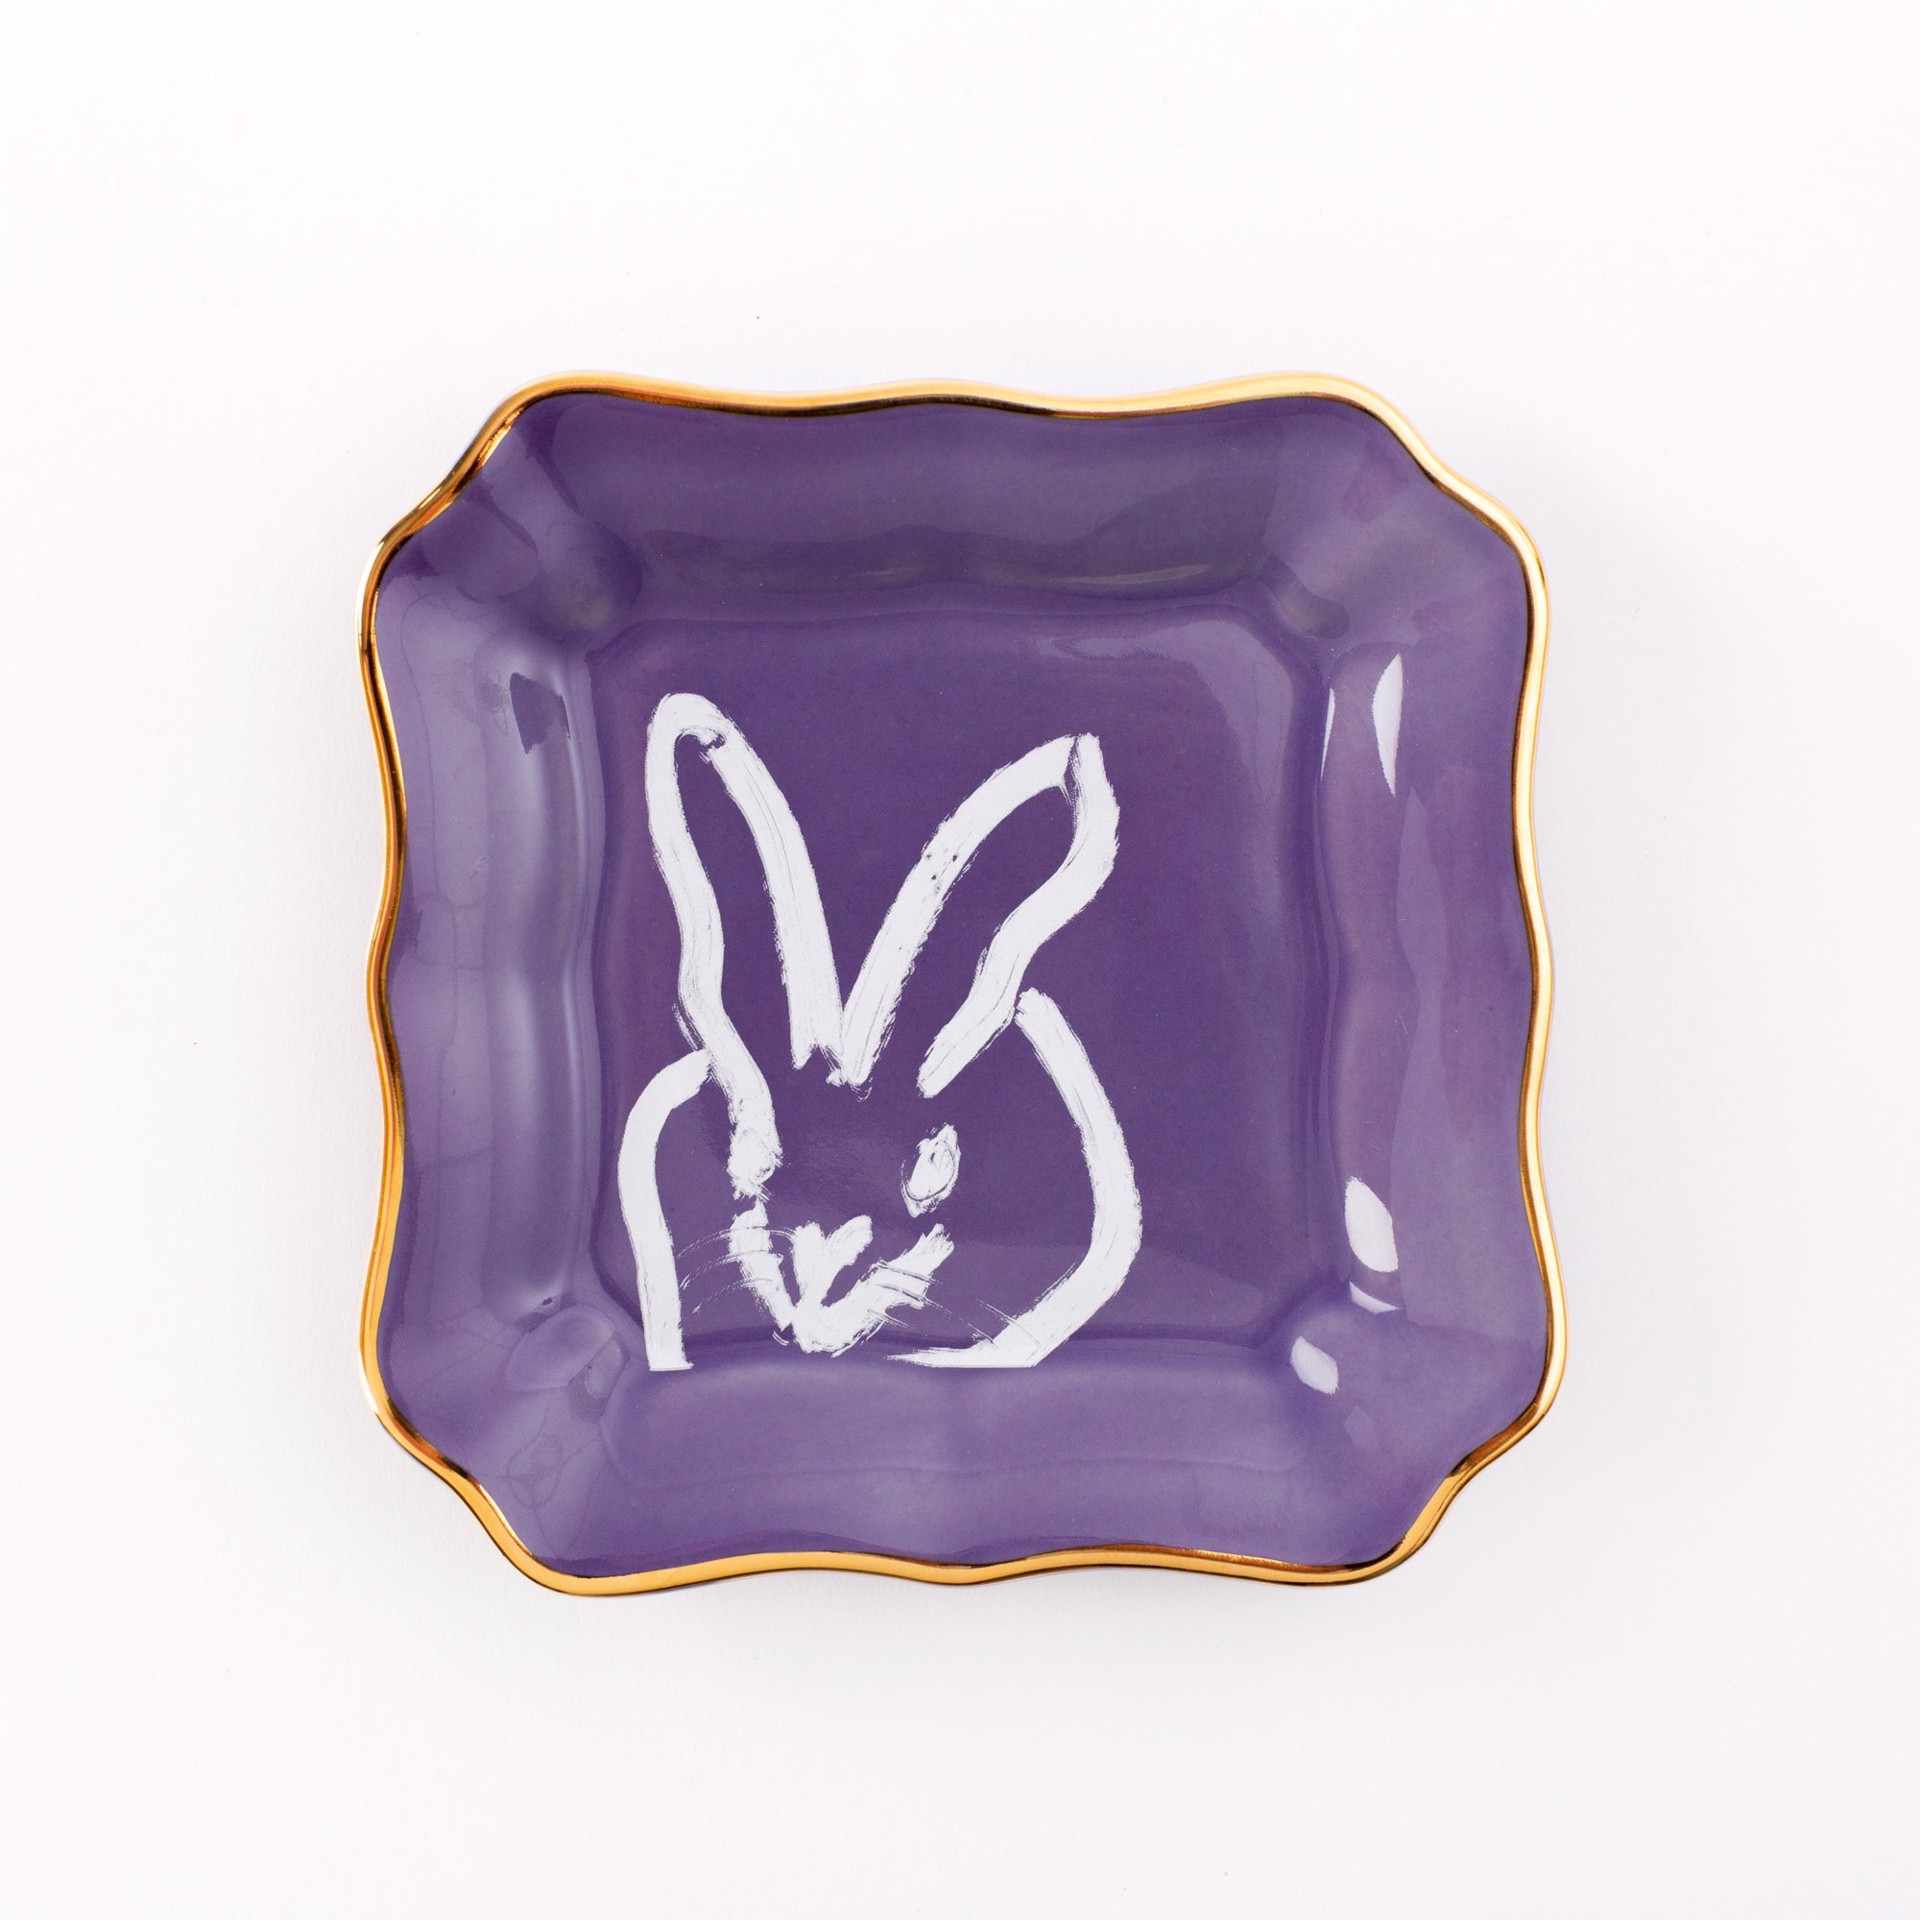 Bunny Portrait Plate - Lilac by Hunt Slonem (Hop Up Shop)